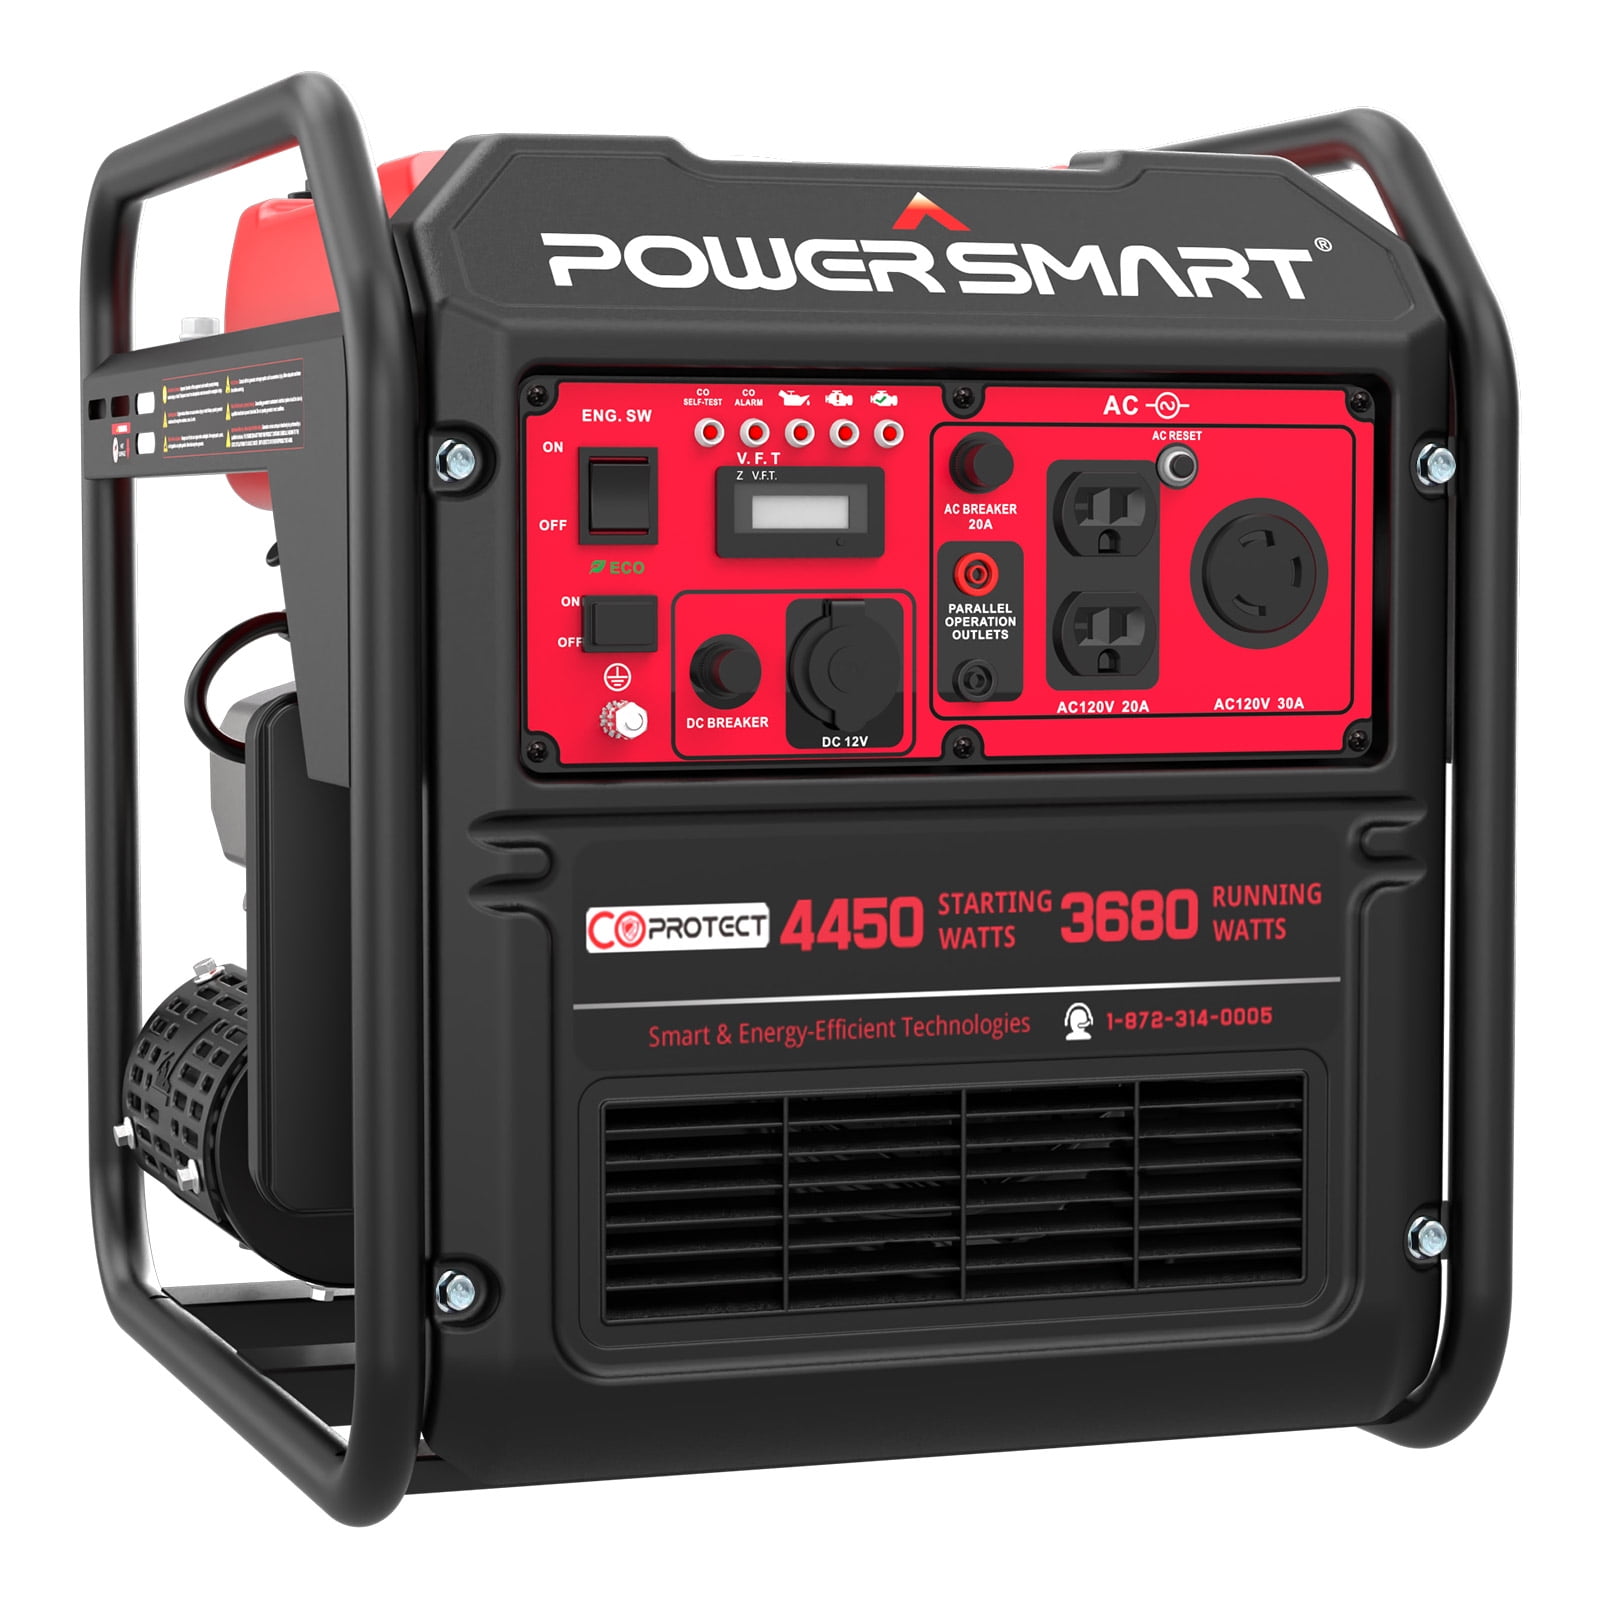 PowerSmart 4400-Watt RV Ready Open Frame Inverter Generator for